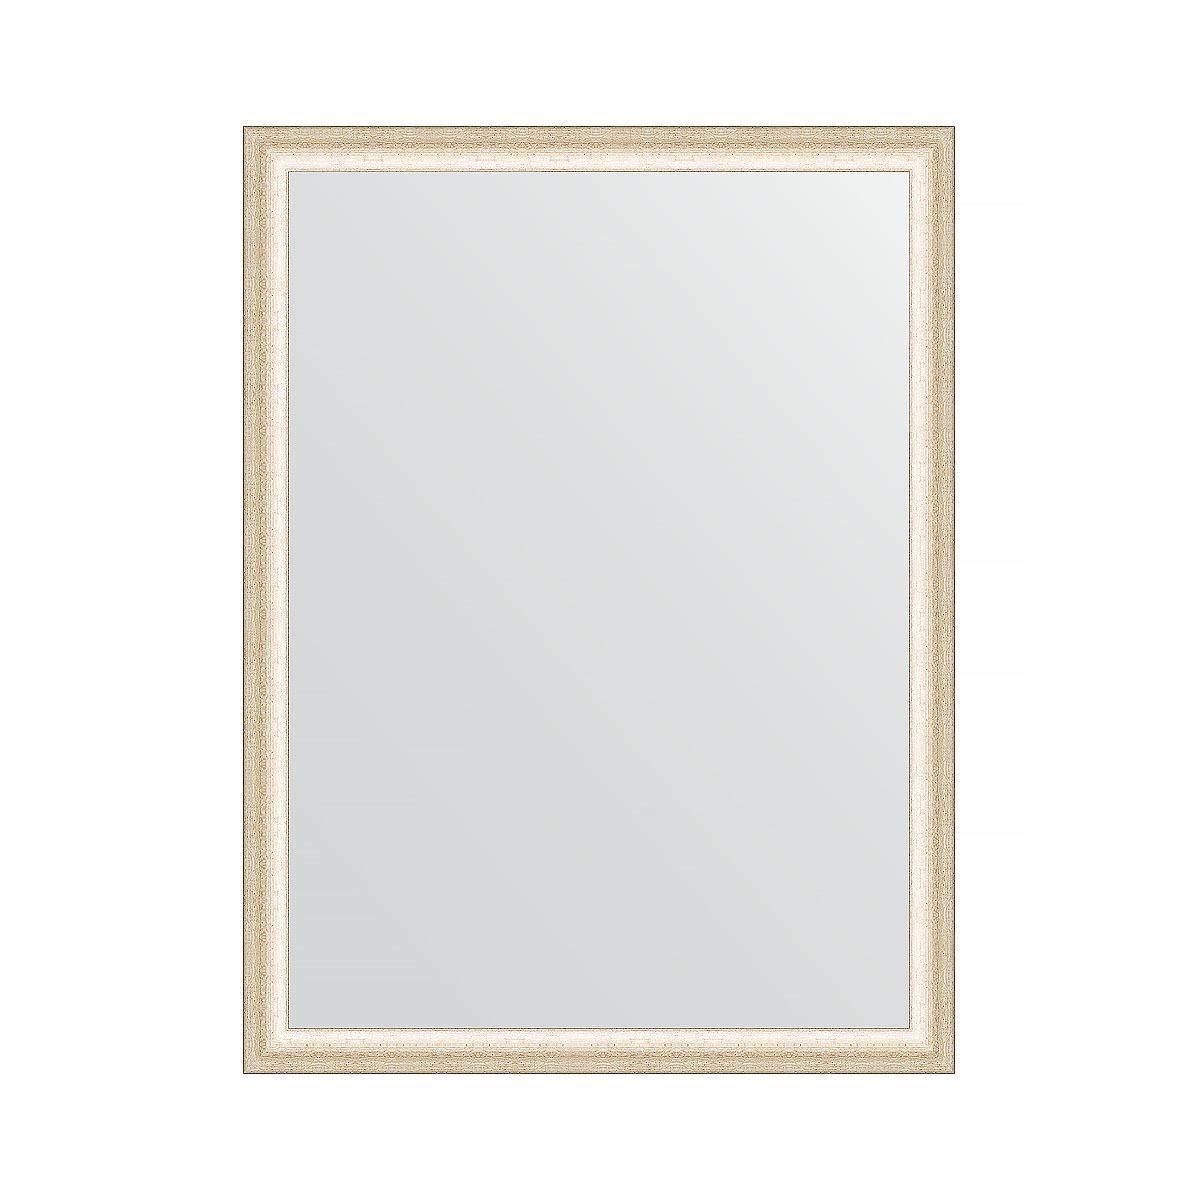 Зеркало в багетной раме Evoform состаренное серебро 37 мм 60х80 см зеркало 73х103 см состаренное бронза с плетением evoform exclusive by 3458